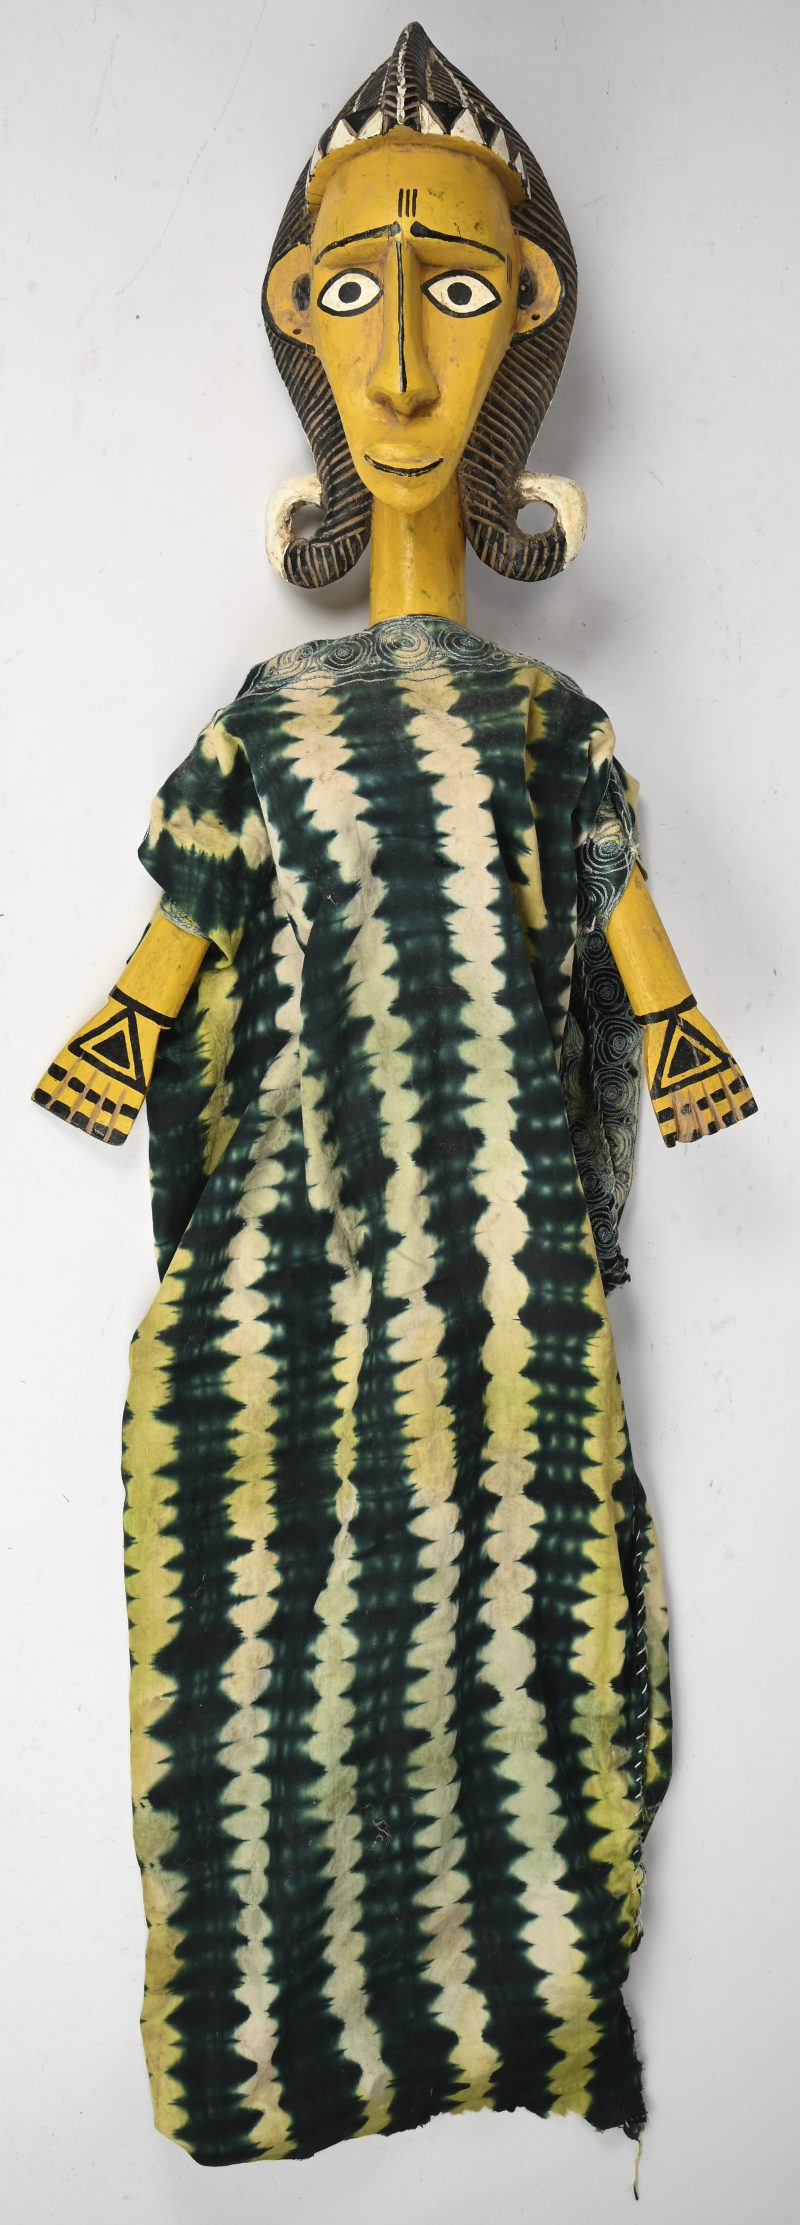 Een polychrome staakpop met jurk. Mali of Ivoorkust.